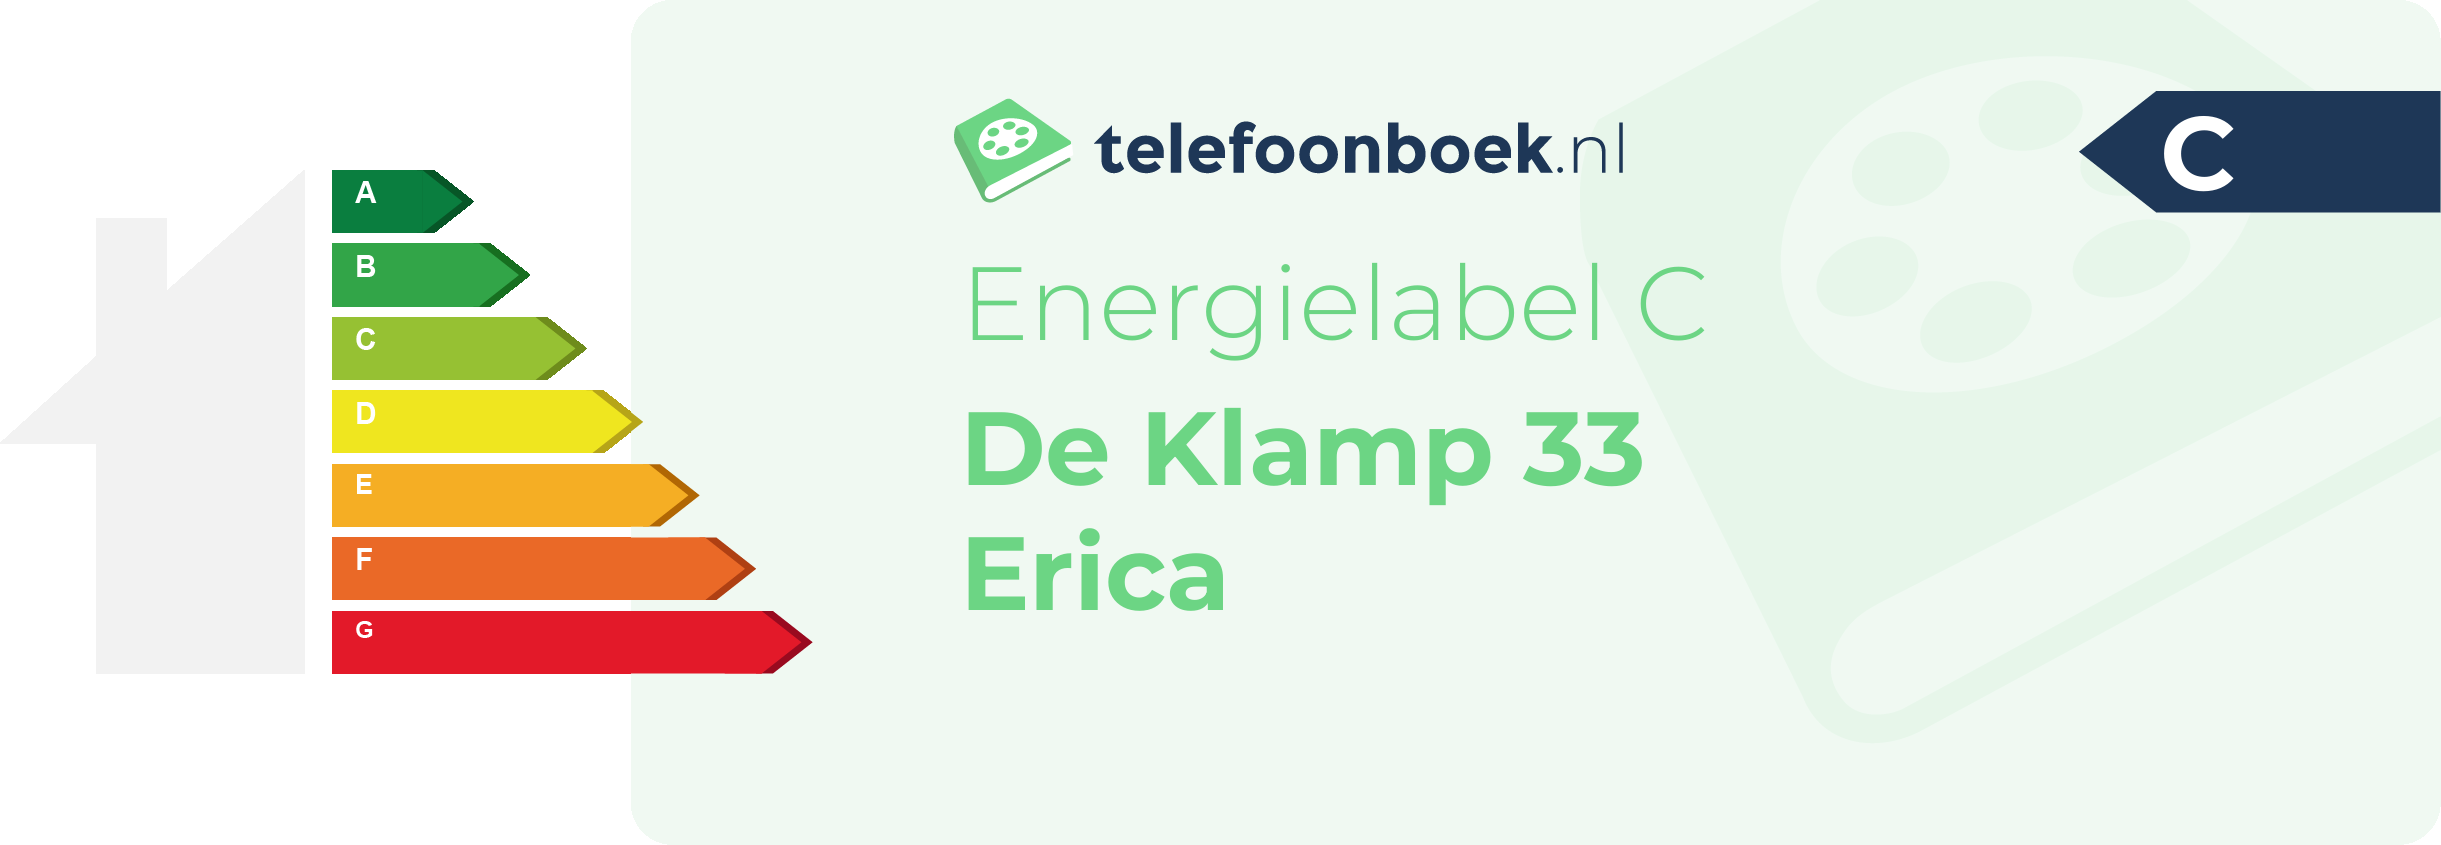 Energielabel De Klamp 33 Erica